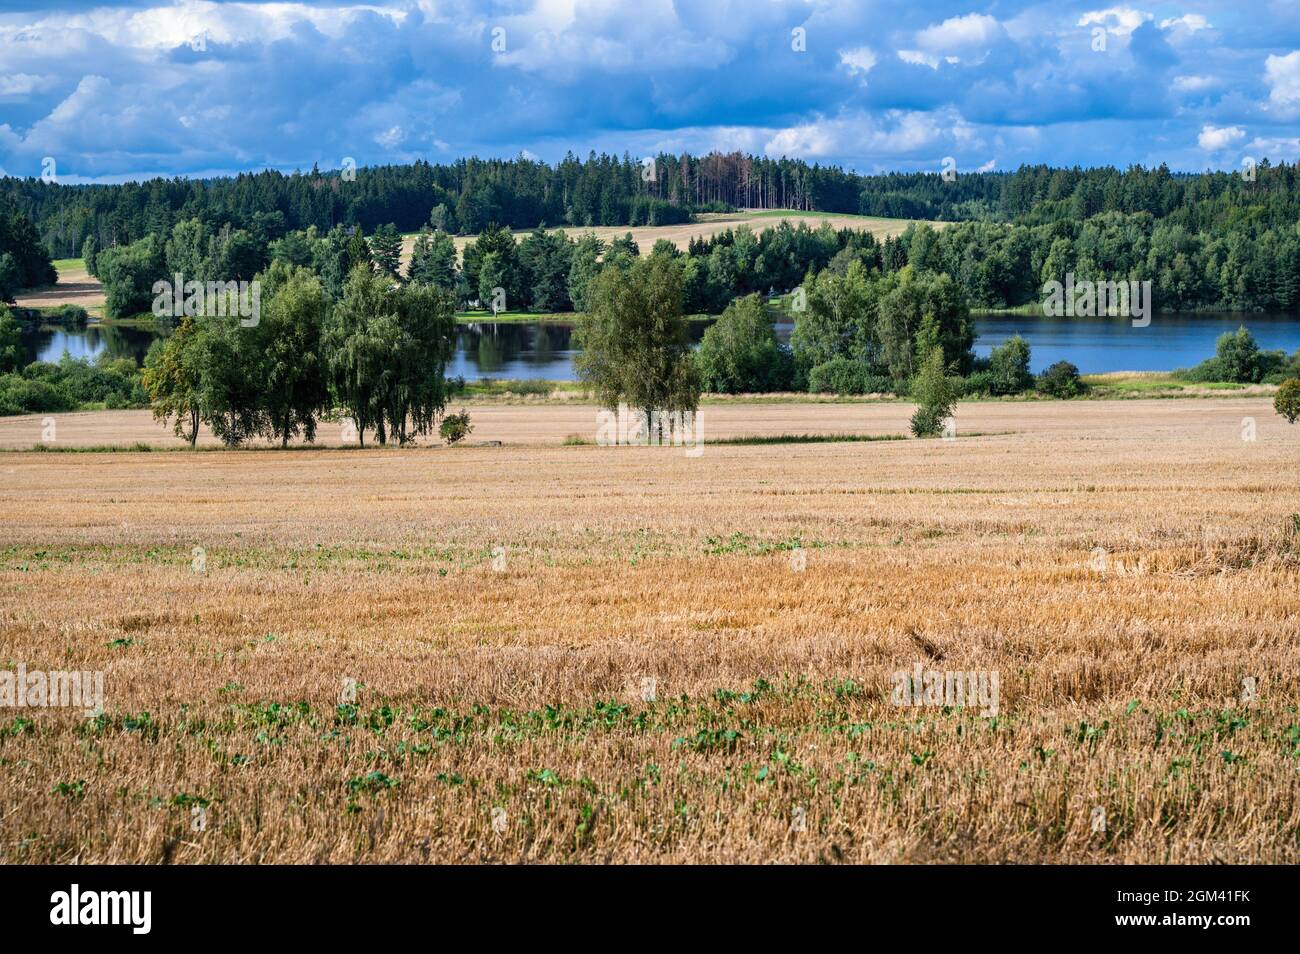 Ländliche Landschaft typisch für die Region in Südböhmen, genannt "Tschechische Kanada", Feld, Wiese, Baum und blauer Teich, in der Nähe des Dorfes Blato, Tschechische republik. Stockfoto